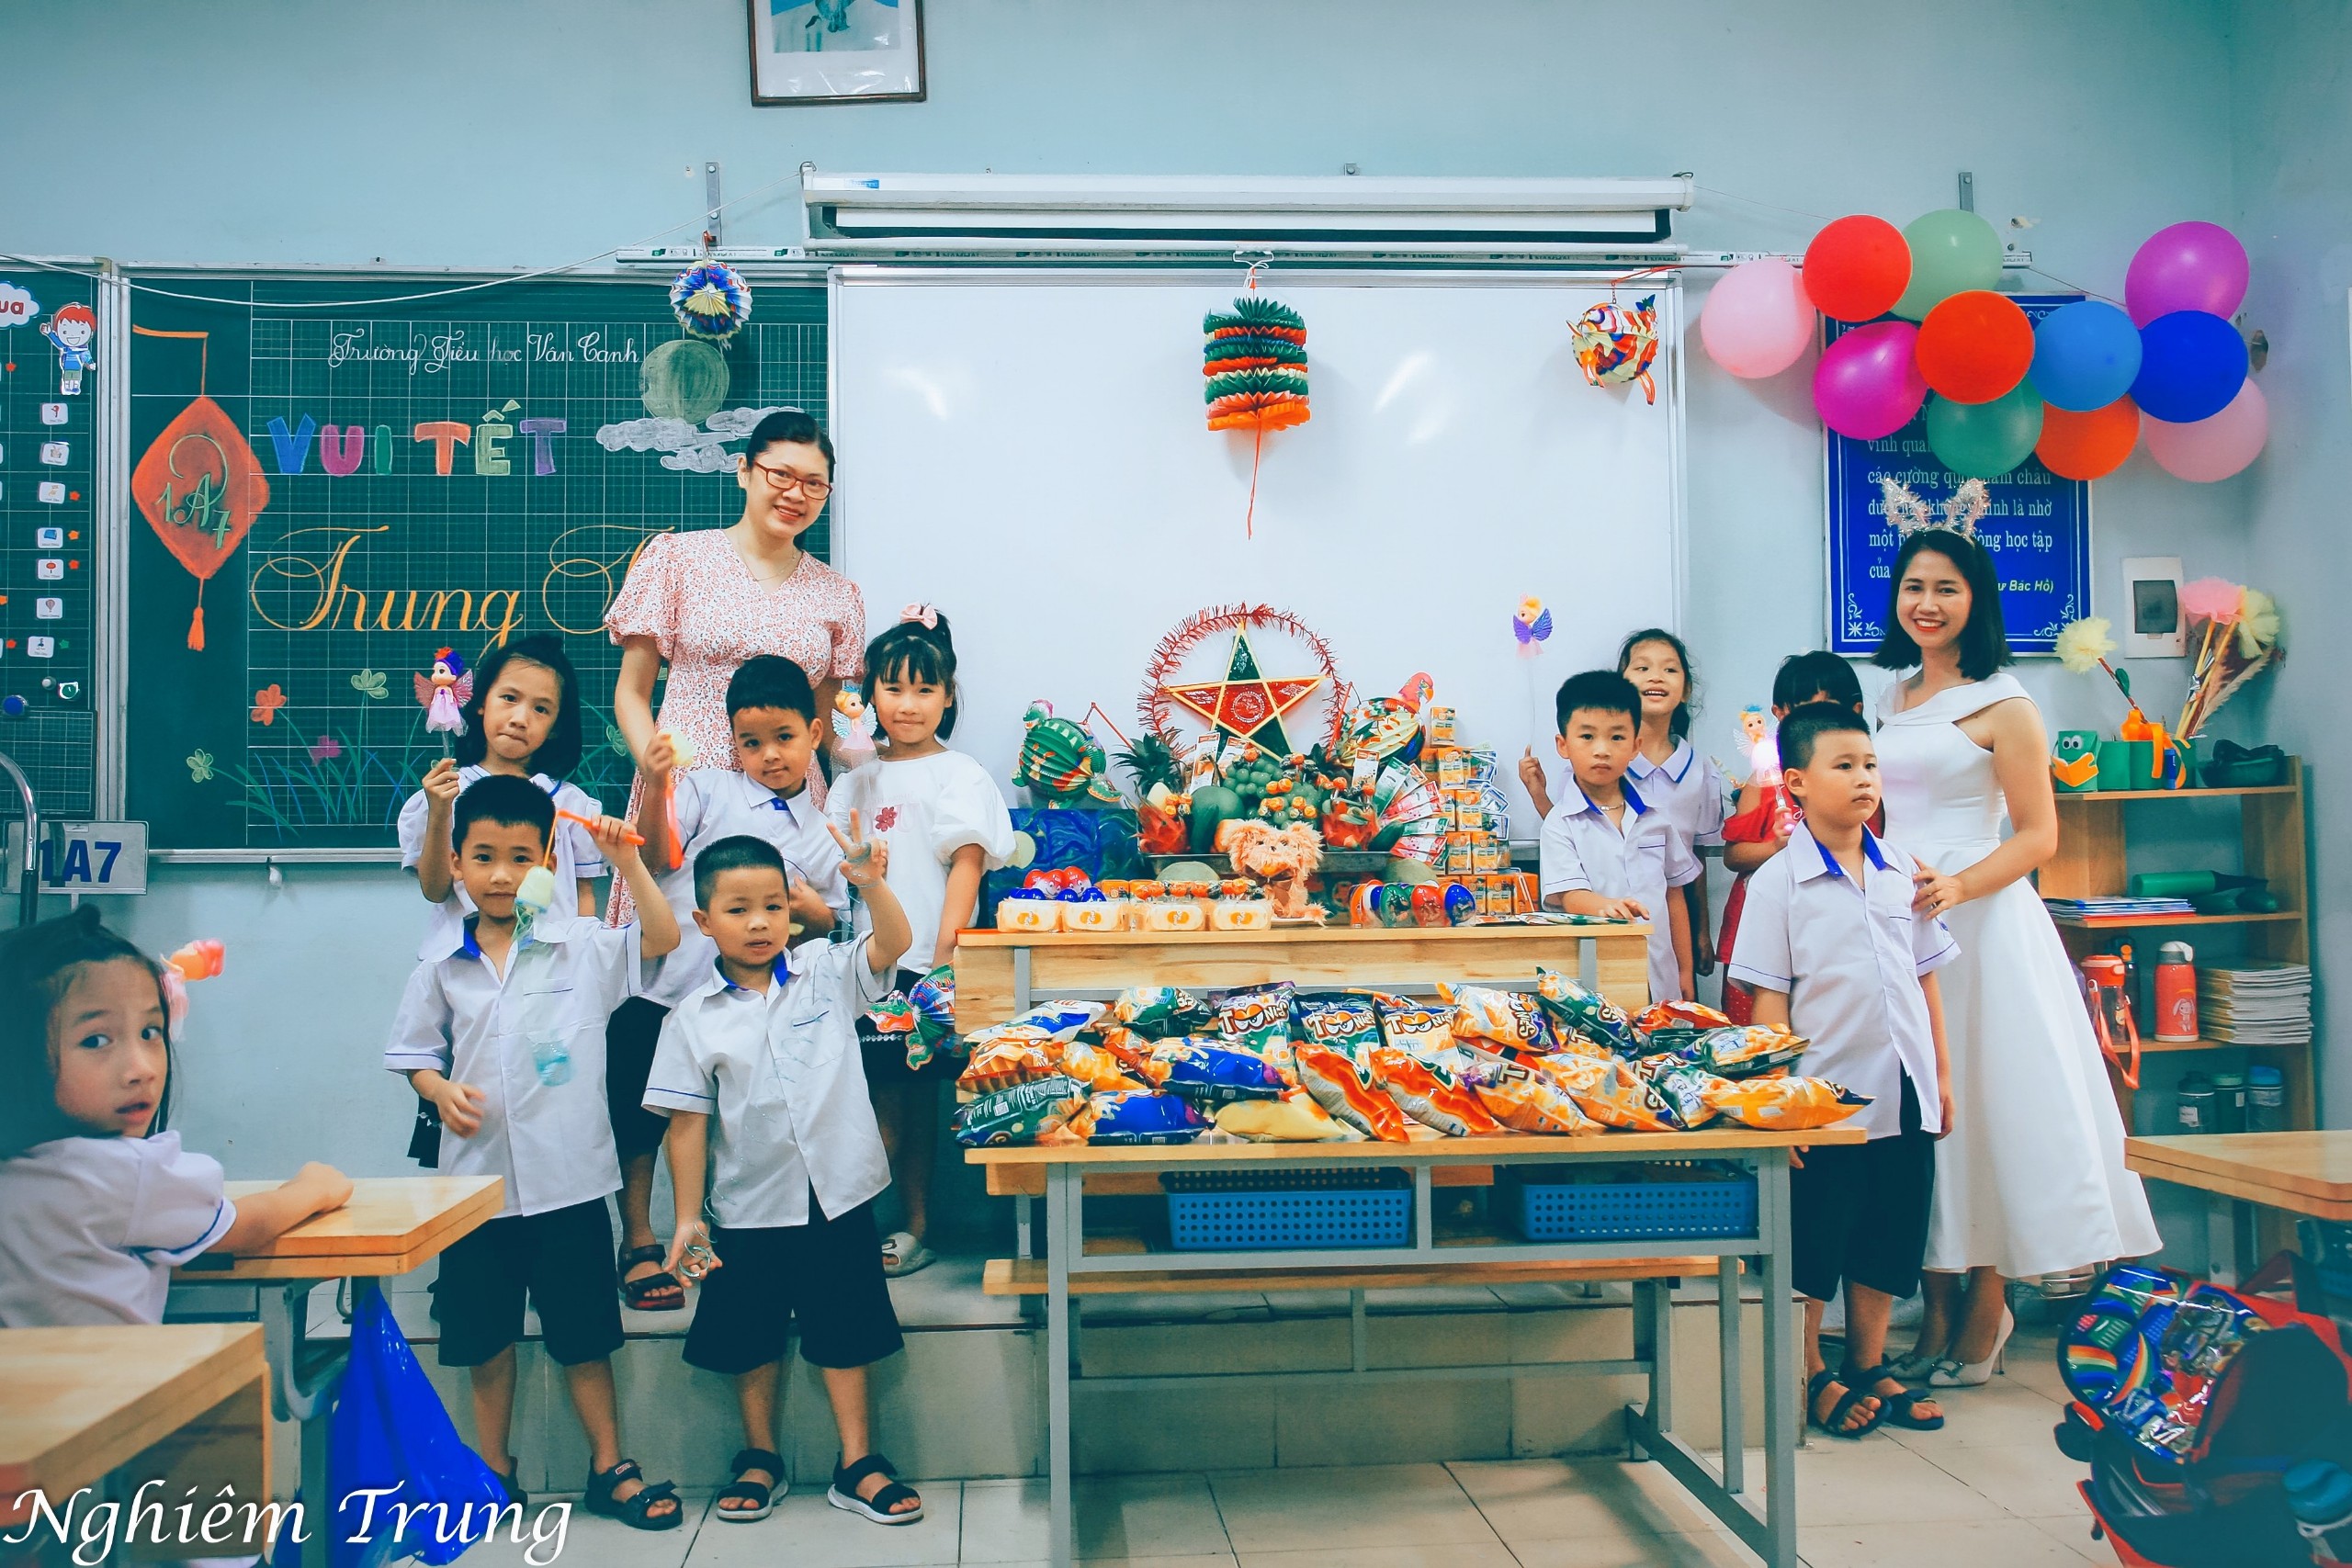 Trường Tiểu học Vân Canh tổ chức Vui hội trăng rằm năm 2022